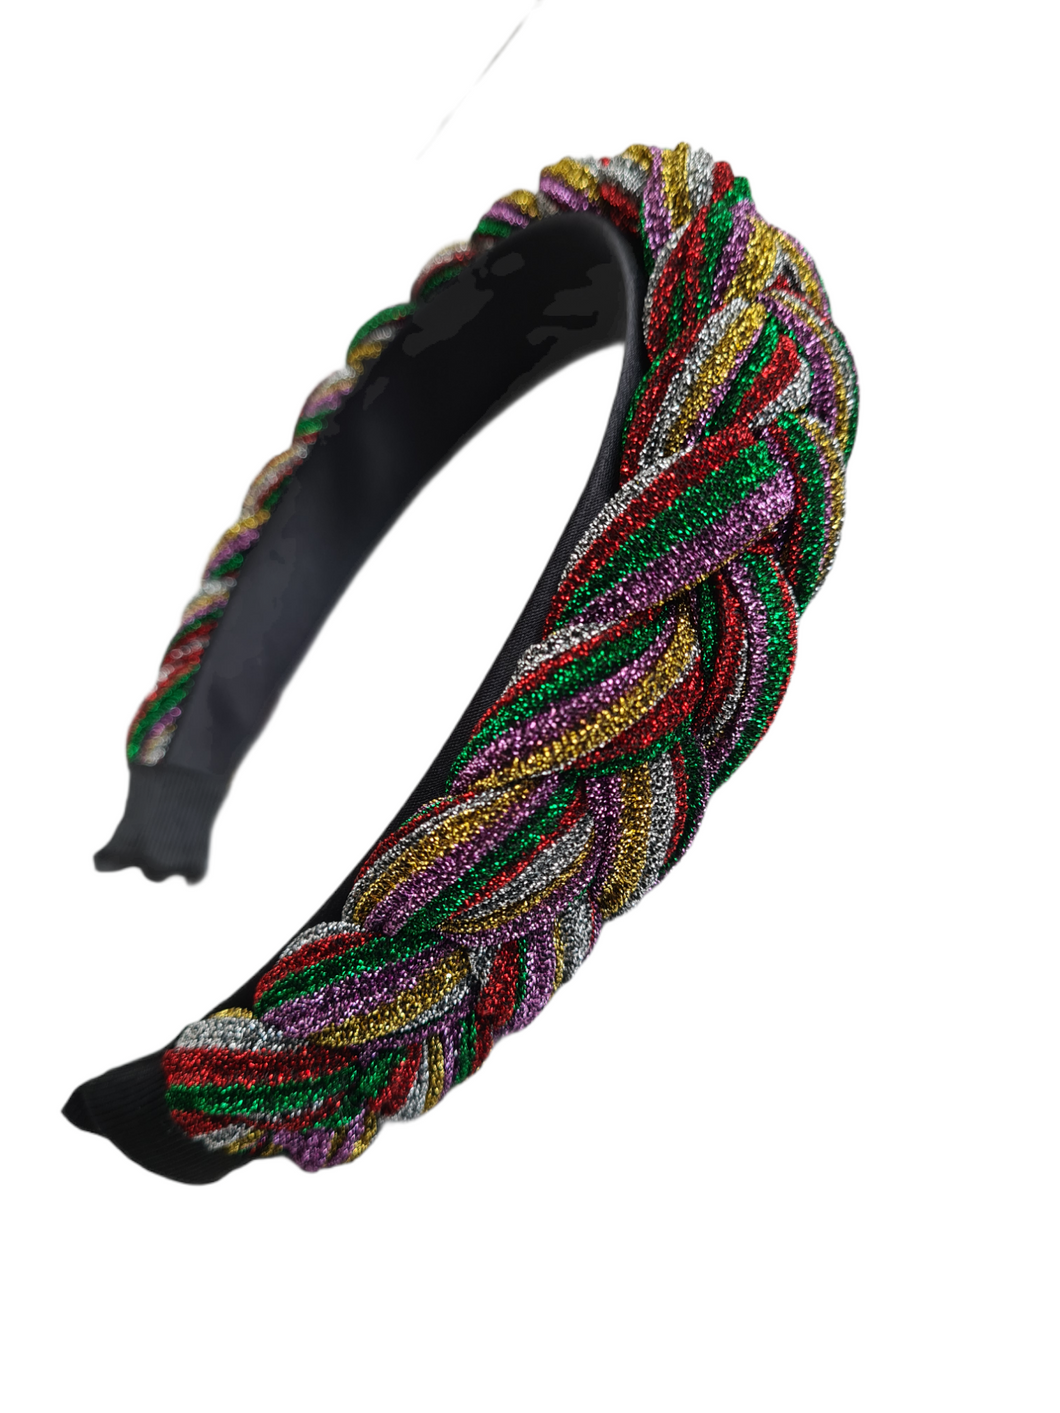 Plisse Metallic Braid Headband